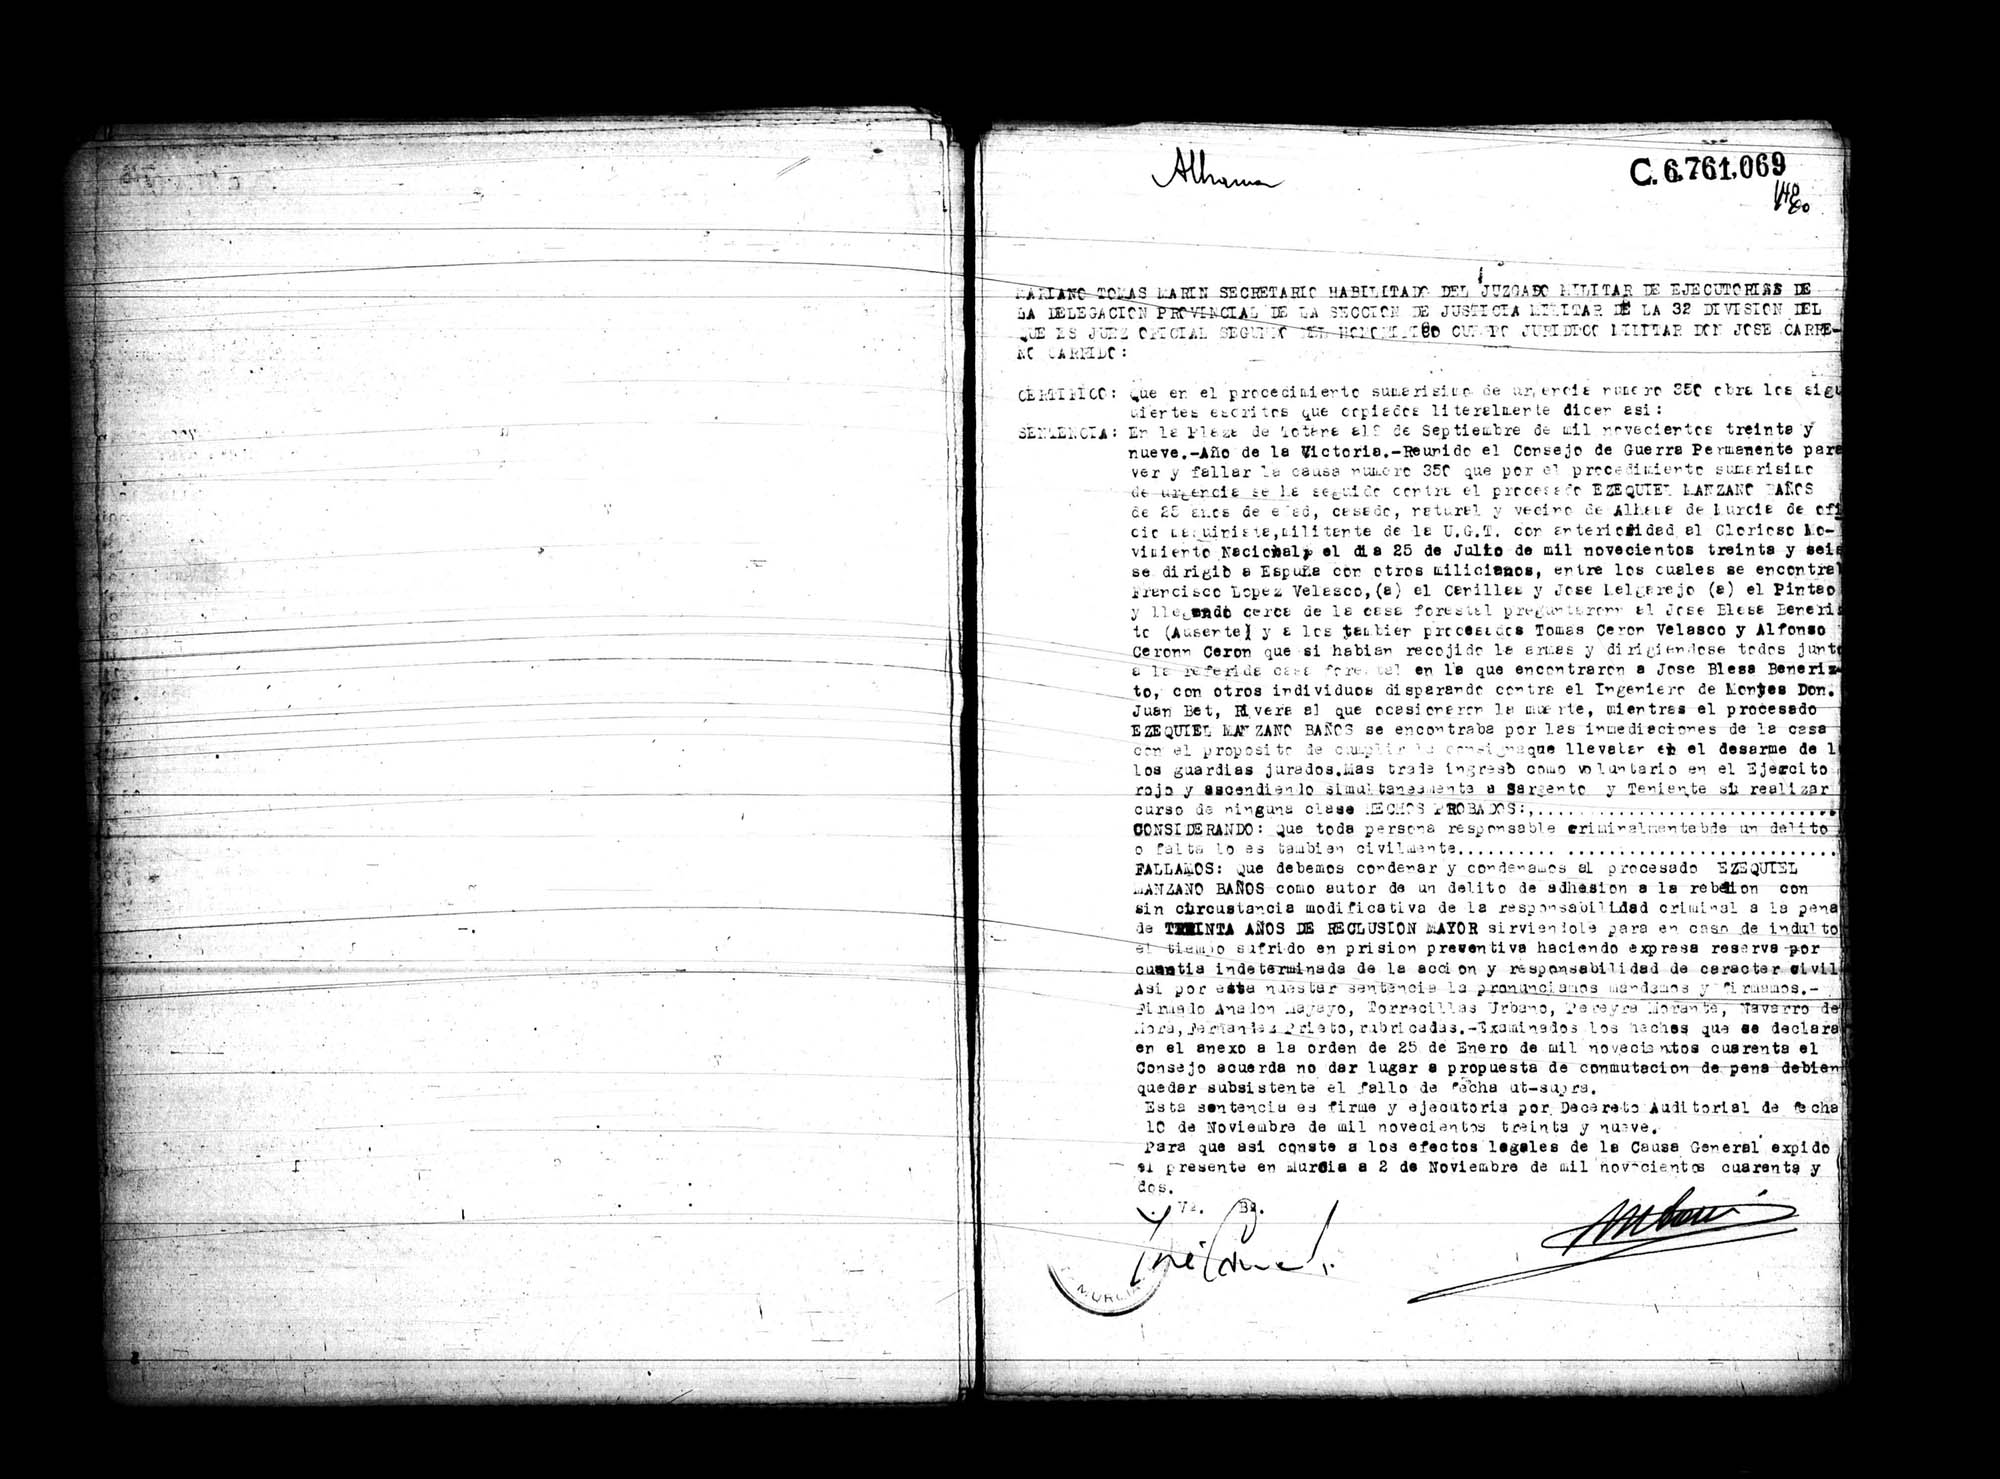 Certificado de la sentencia pronunciada contra Ezequiel Manzano Baños, causa 350, el 8 de septiembre de 1939 en Totana.